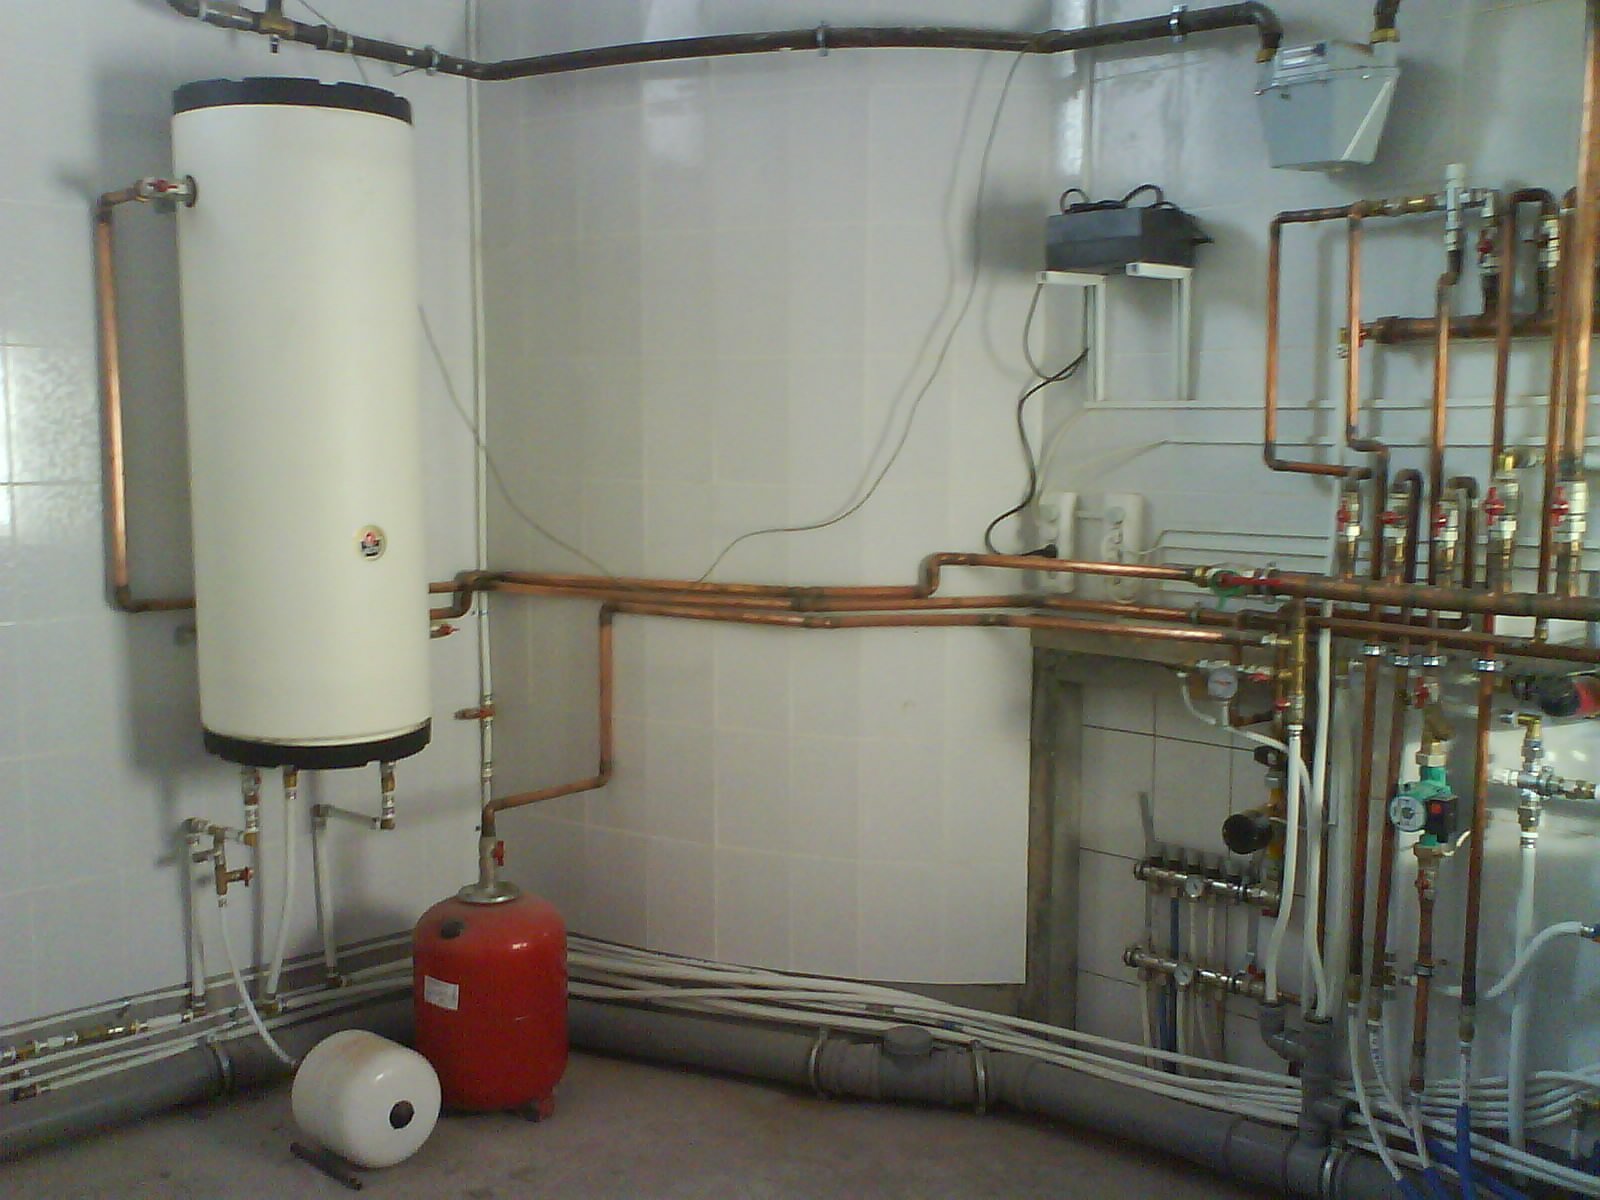 Какие приборы и оборудование входят в состав водяной системы отопления?